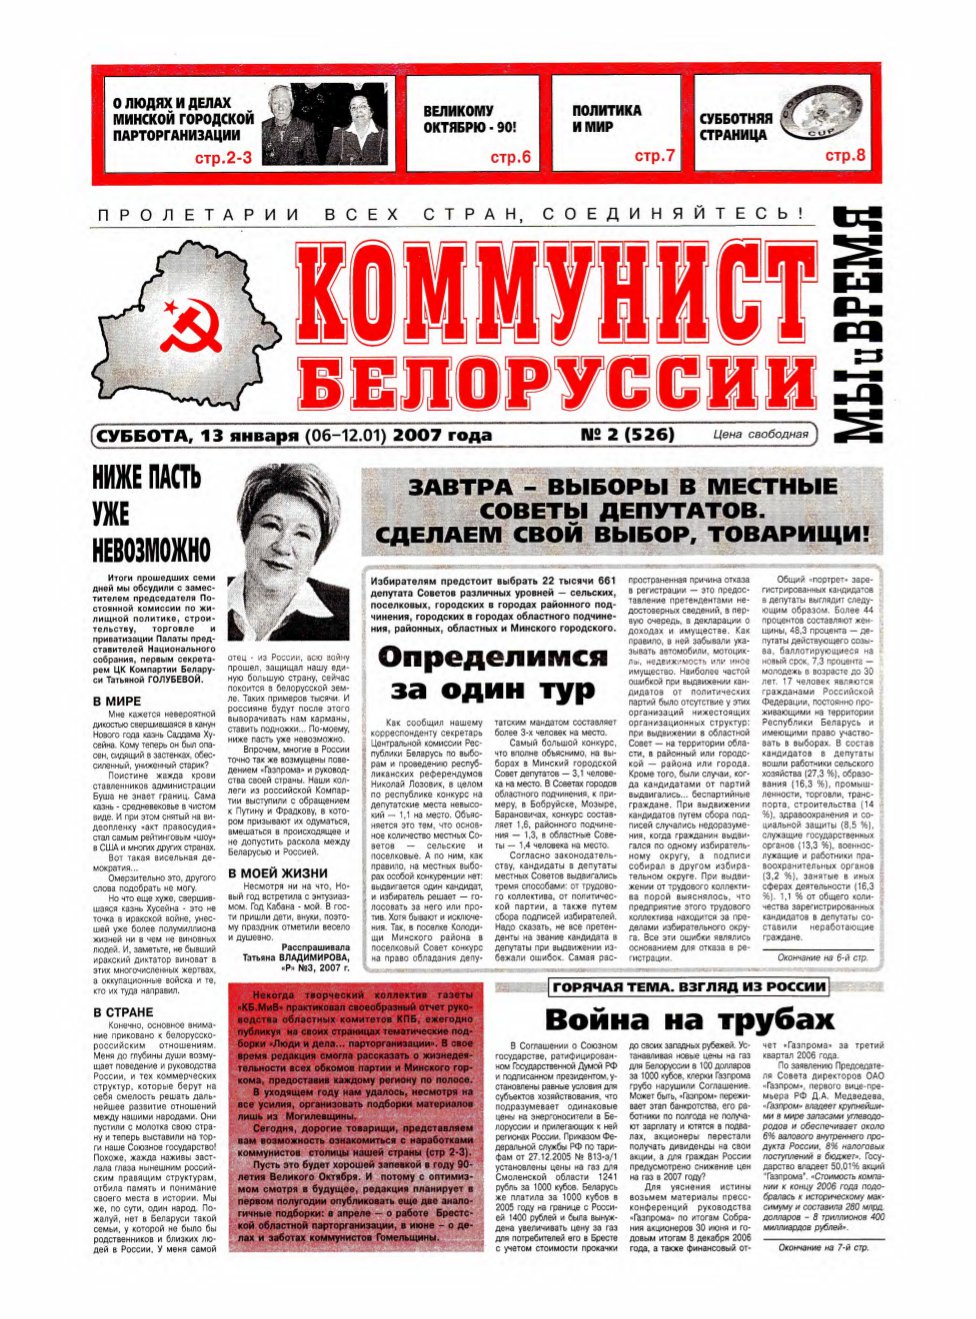 Коммунист Белорусси 02 (526) 2007